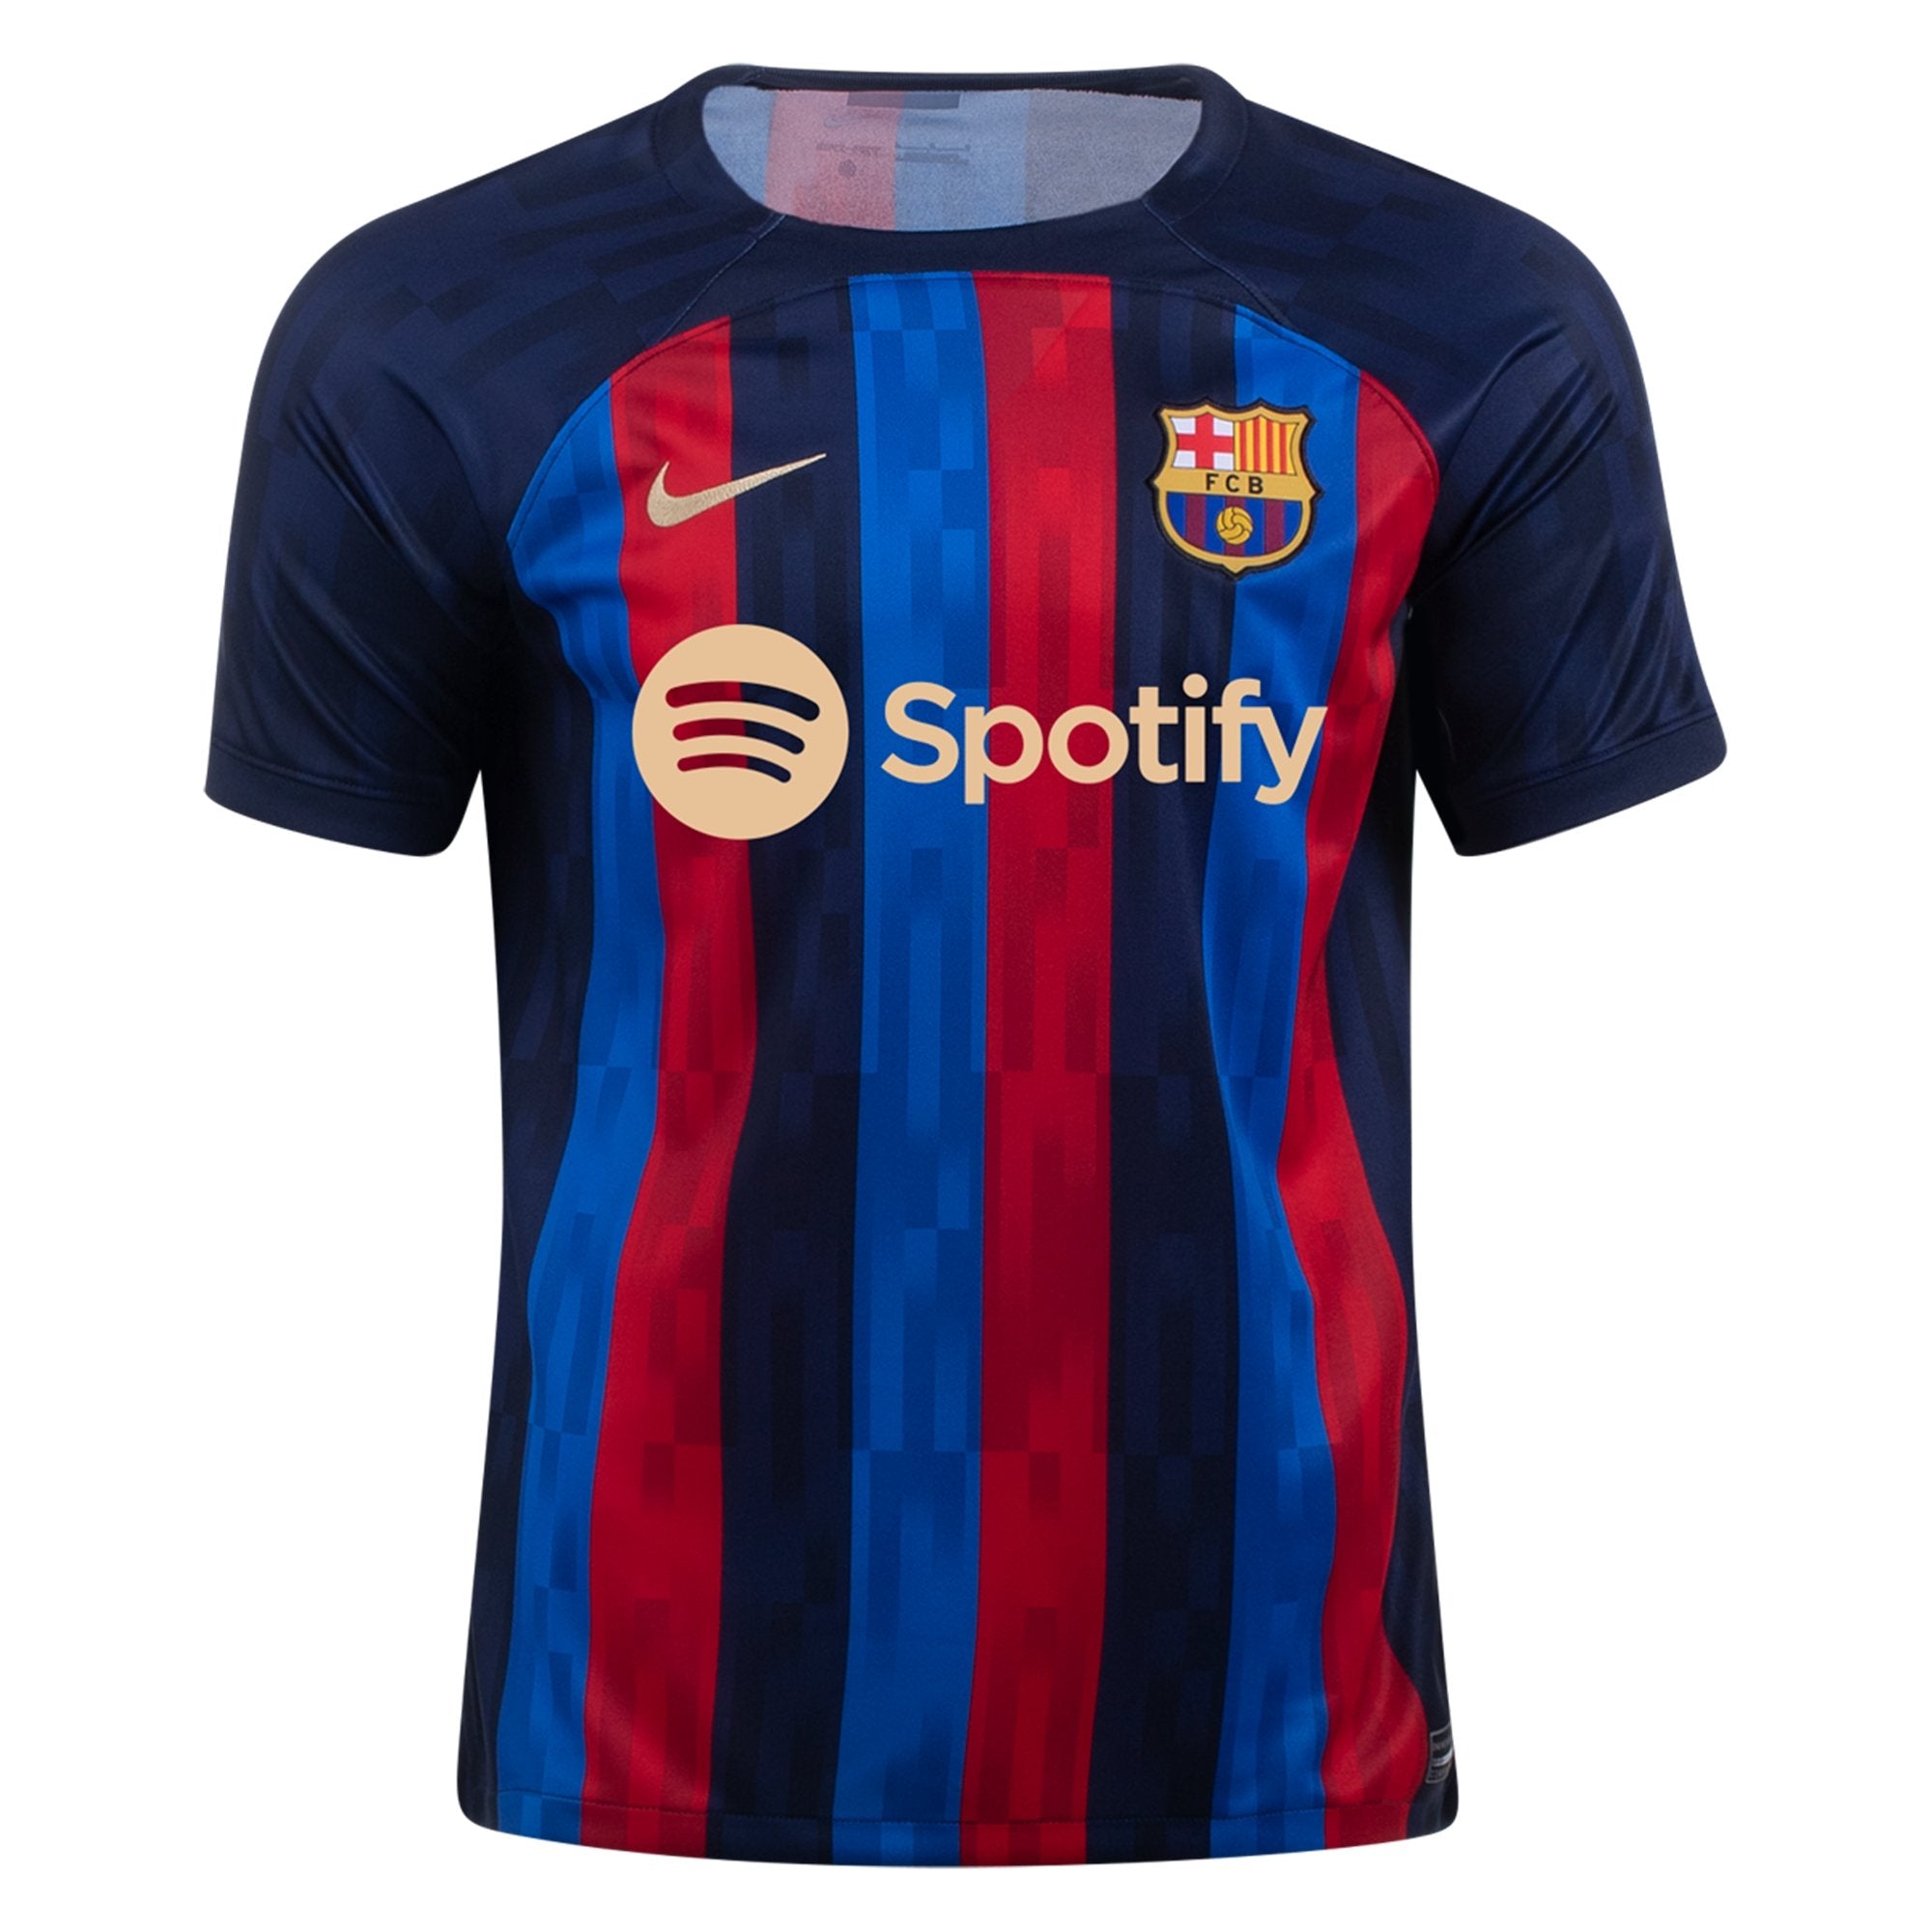 As De nada conveniencia Men's Replica Nike Barcelona Home Jersey 22/23 DM1840-452 – Soccer Zone USA